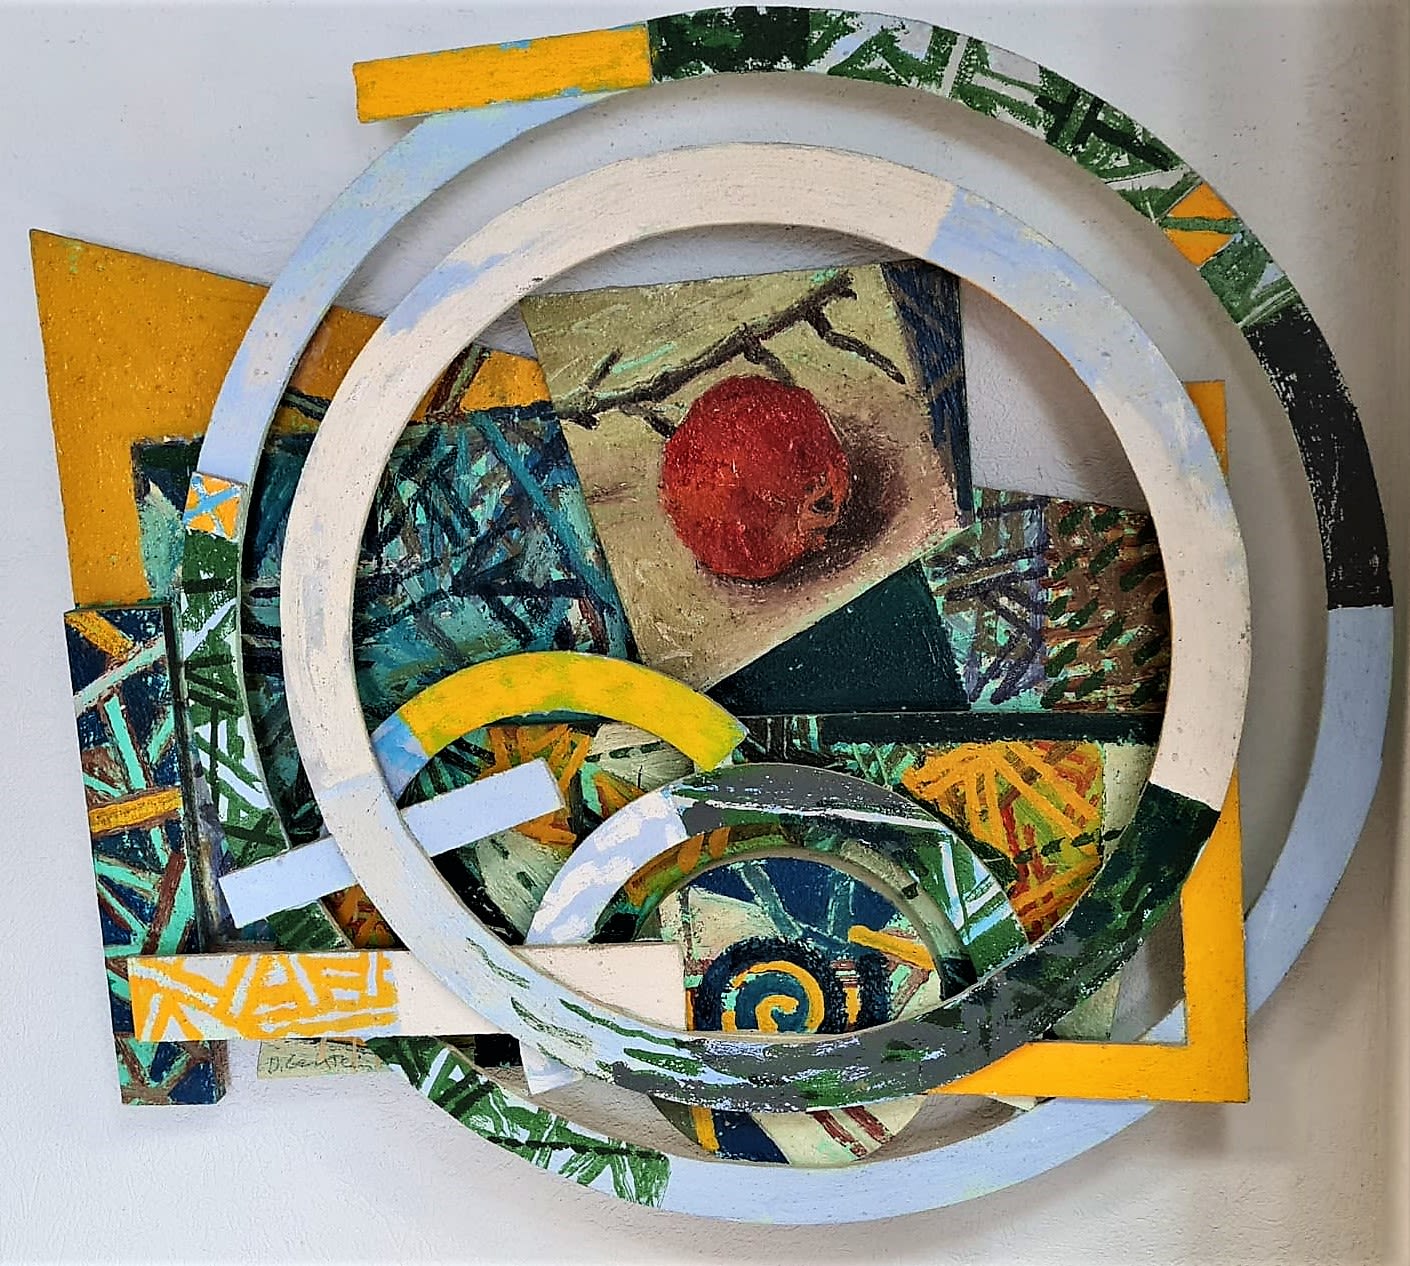 “Circles” By David Gerstein 80 X 88 X 12 cm